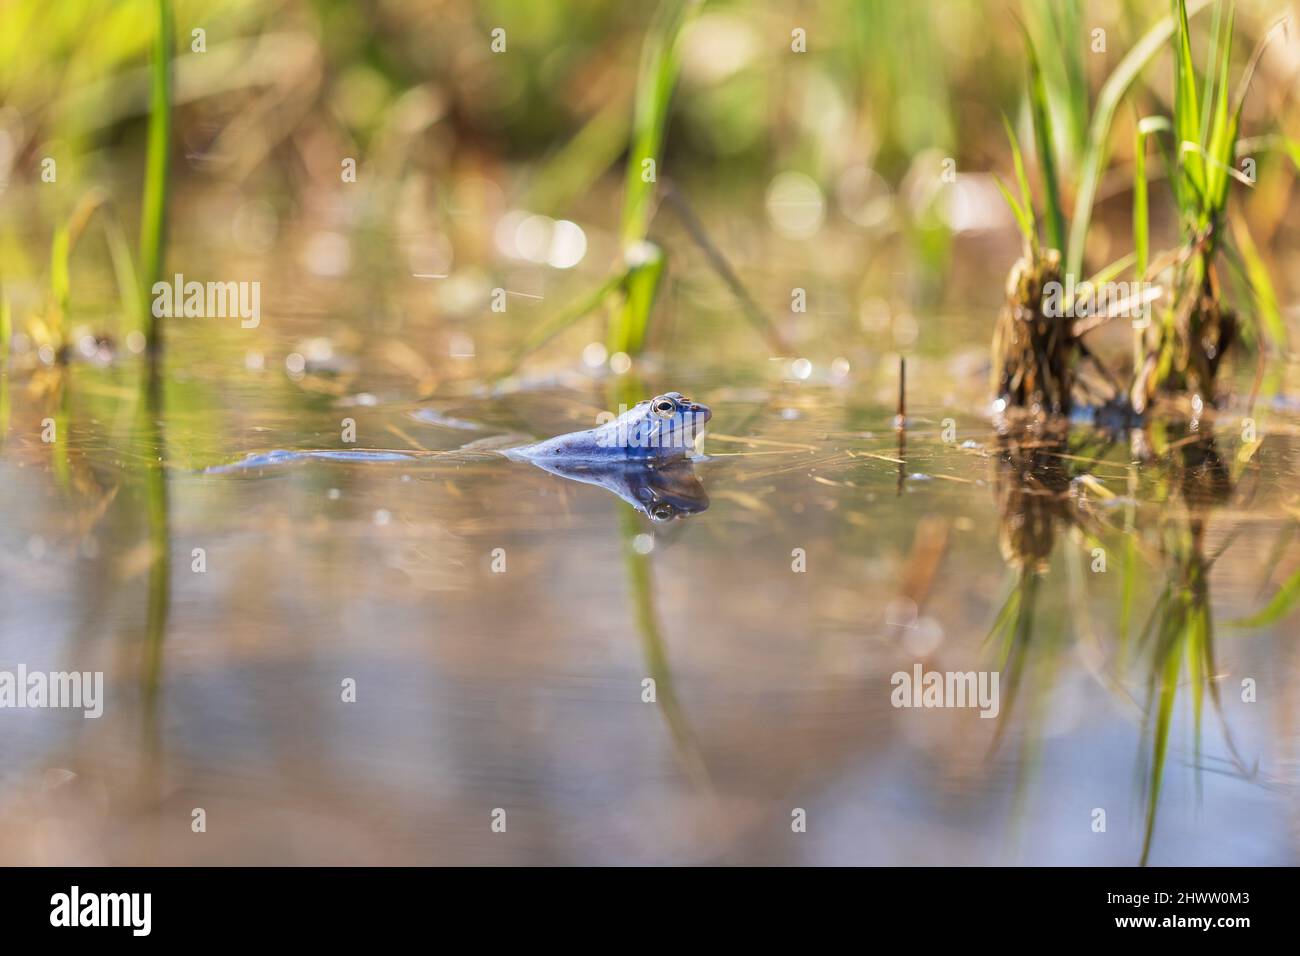 Blue Frog - Rana arvalis in acqua al momento dell'accoppiamento. Foto selvaggia dalla natura. La foto ha un bel bokeh. Foto Stock